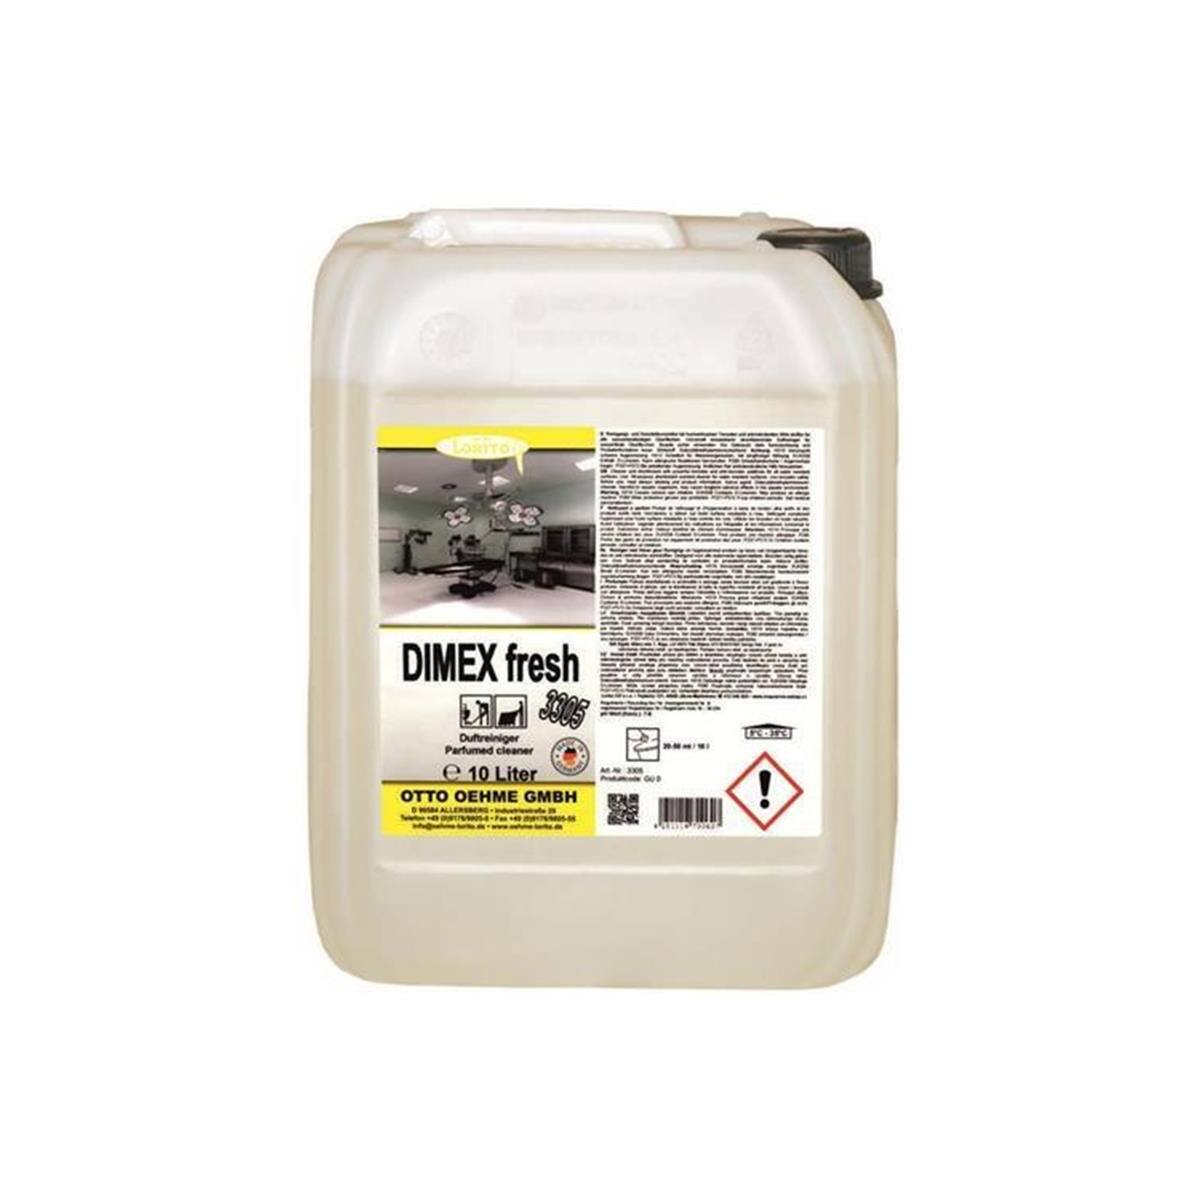 Lorito Dimex fresh 3305 10 Liter Duftreiniger Bodenreiniger Hygienereiniger